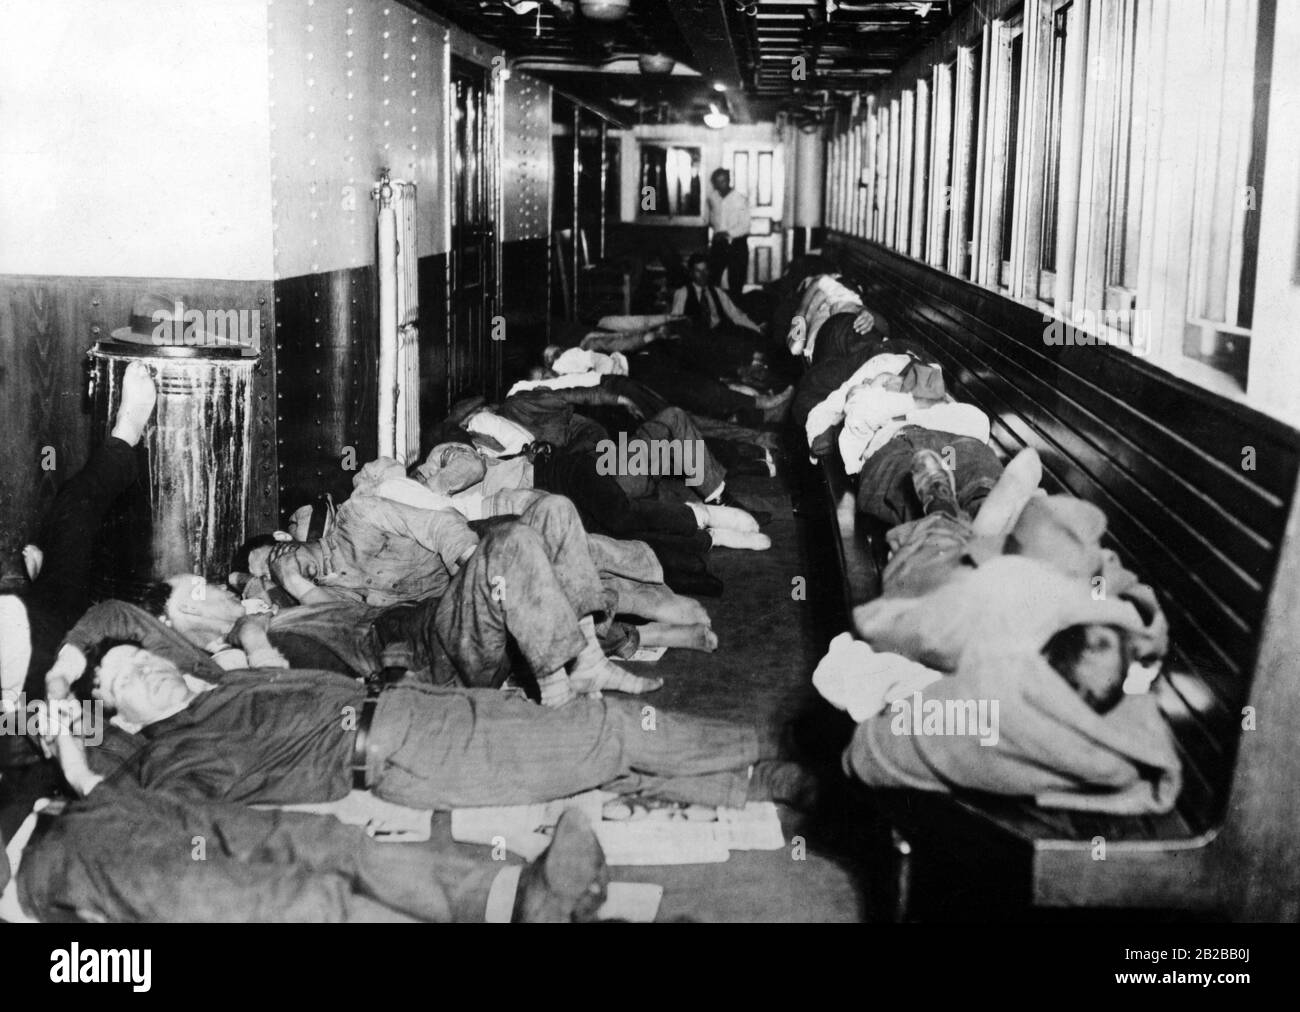 Weltwirtschaftskrise: Obdachlose schlafen im Dampfer "Colonel Clayton" in New York (undatiertes Bild). Stockfoto